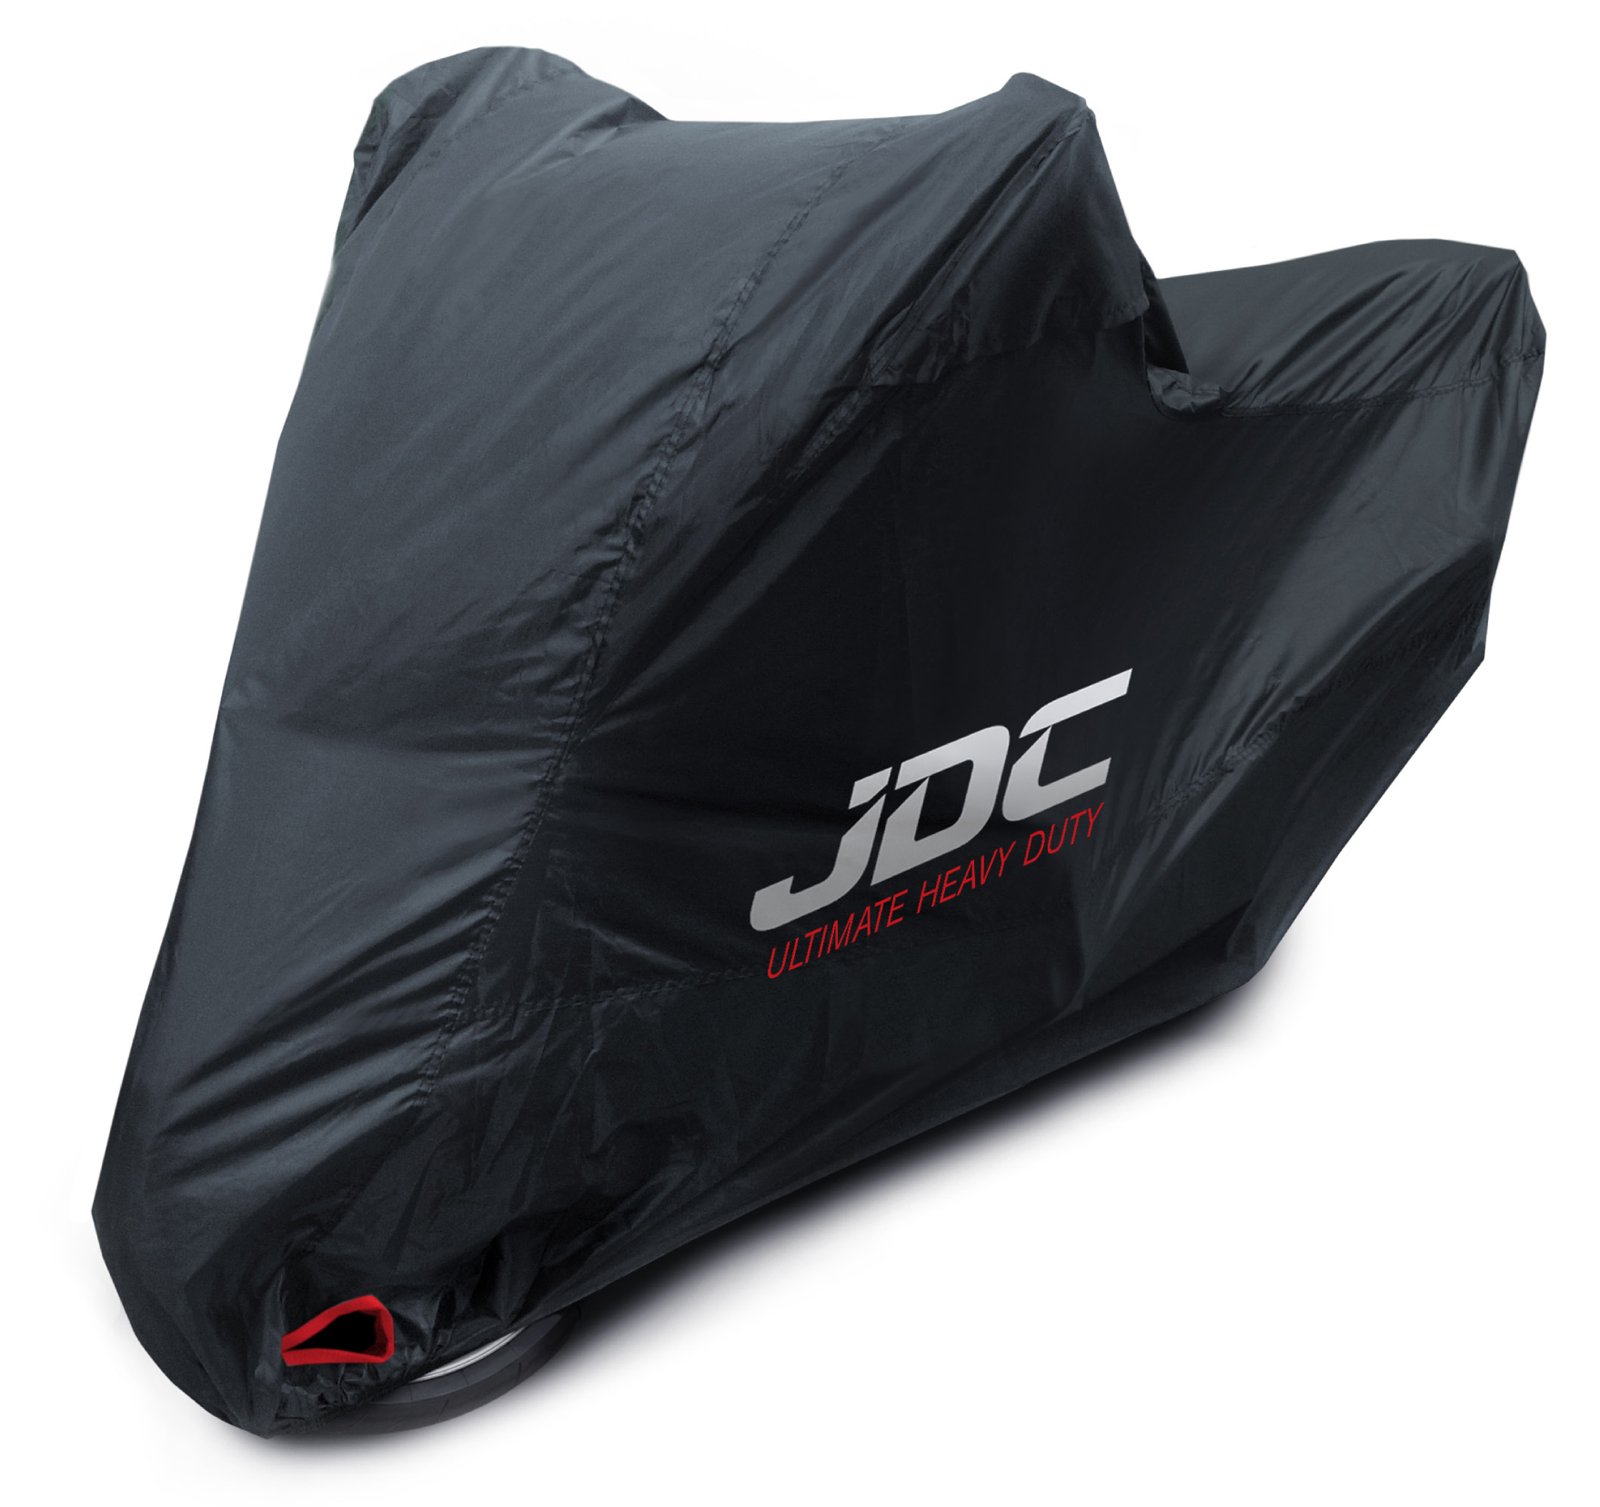 JDC 100% wasserdichte Motorradabdeckung - Ultimate Heavy Duty (Extra strapazierfähig, weiches Futter, hitzebeständig, verschweißte Nähte) - XXL Top-Box von JDC